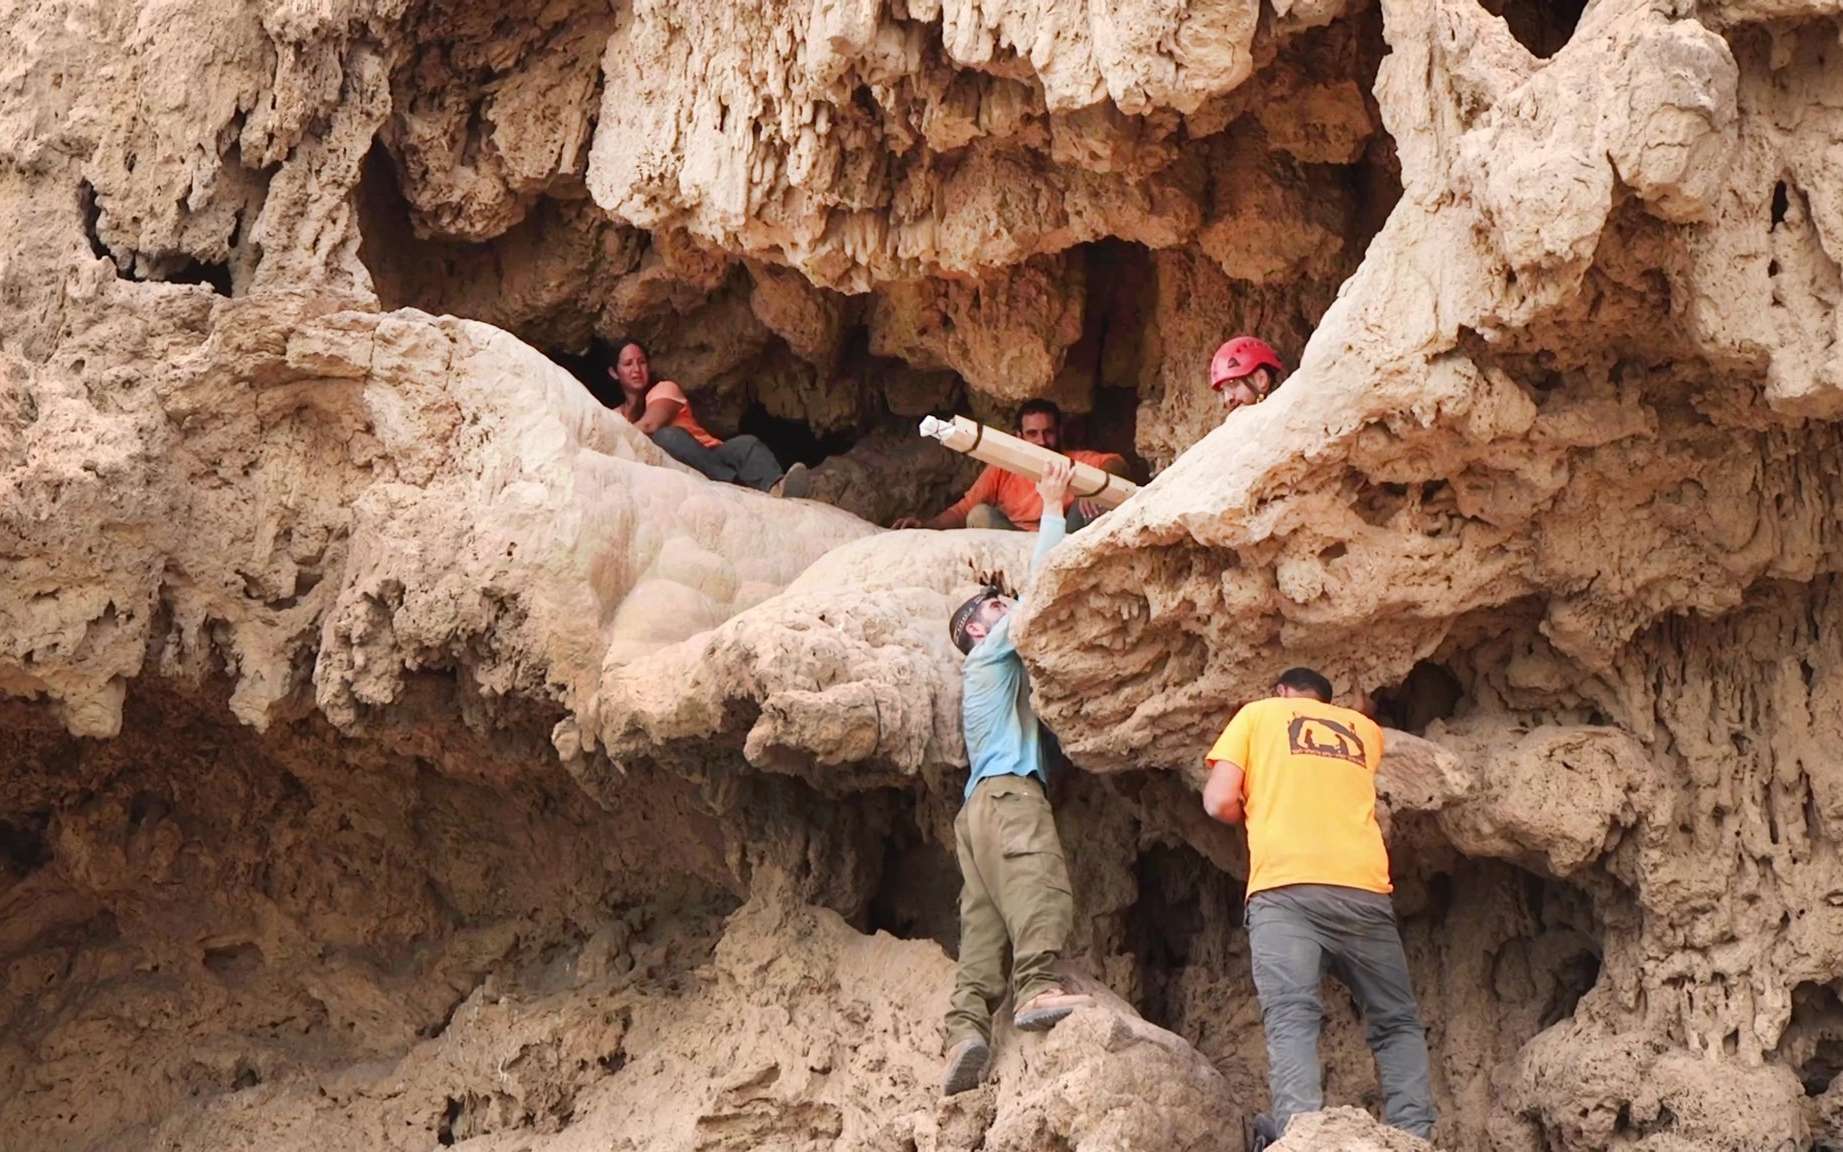 Les scientifiques émerveillés par leur découverte de quatre glaives romains cachés dans une grotte